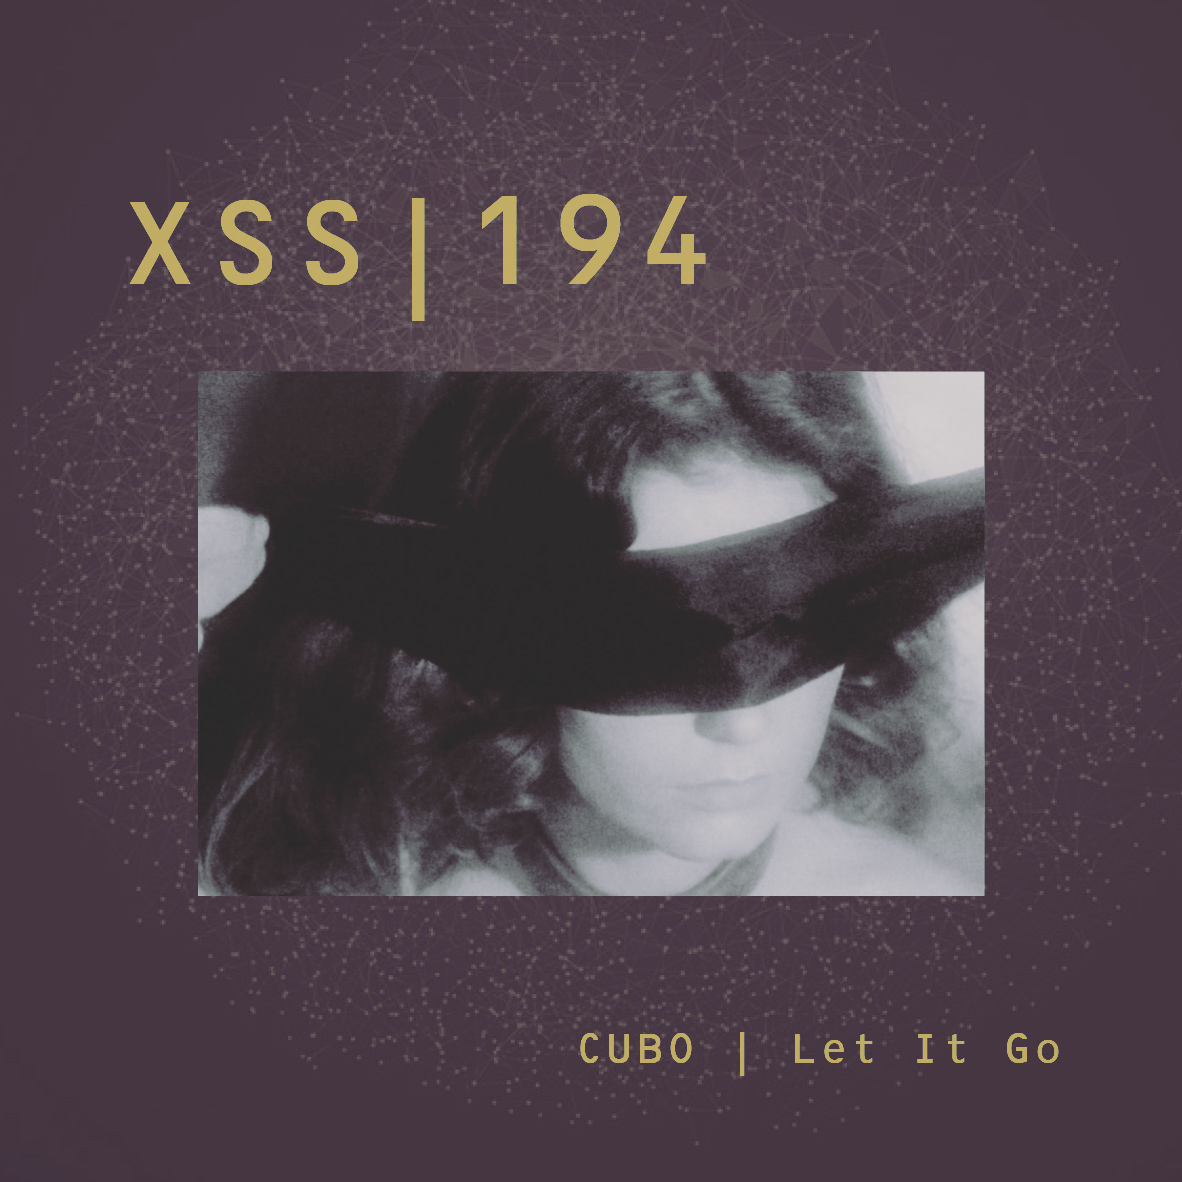 XSS194-cubo-let-it-go